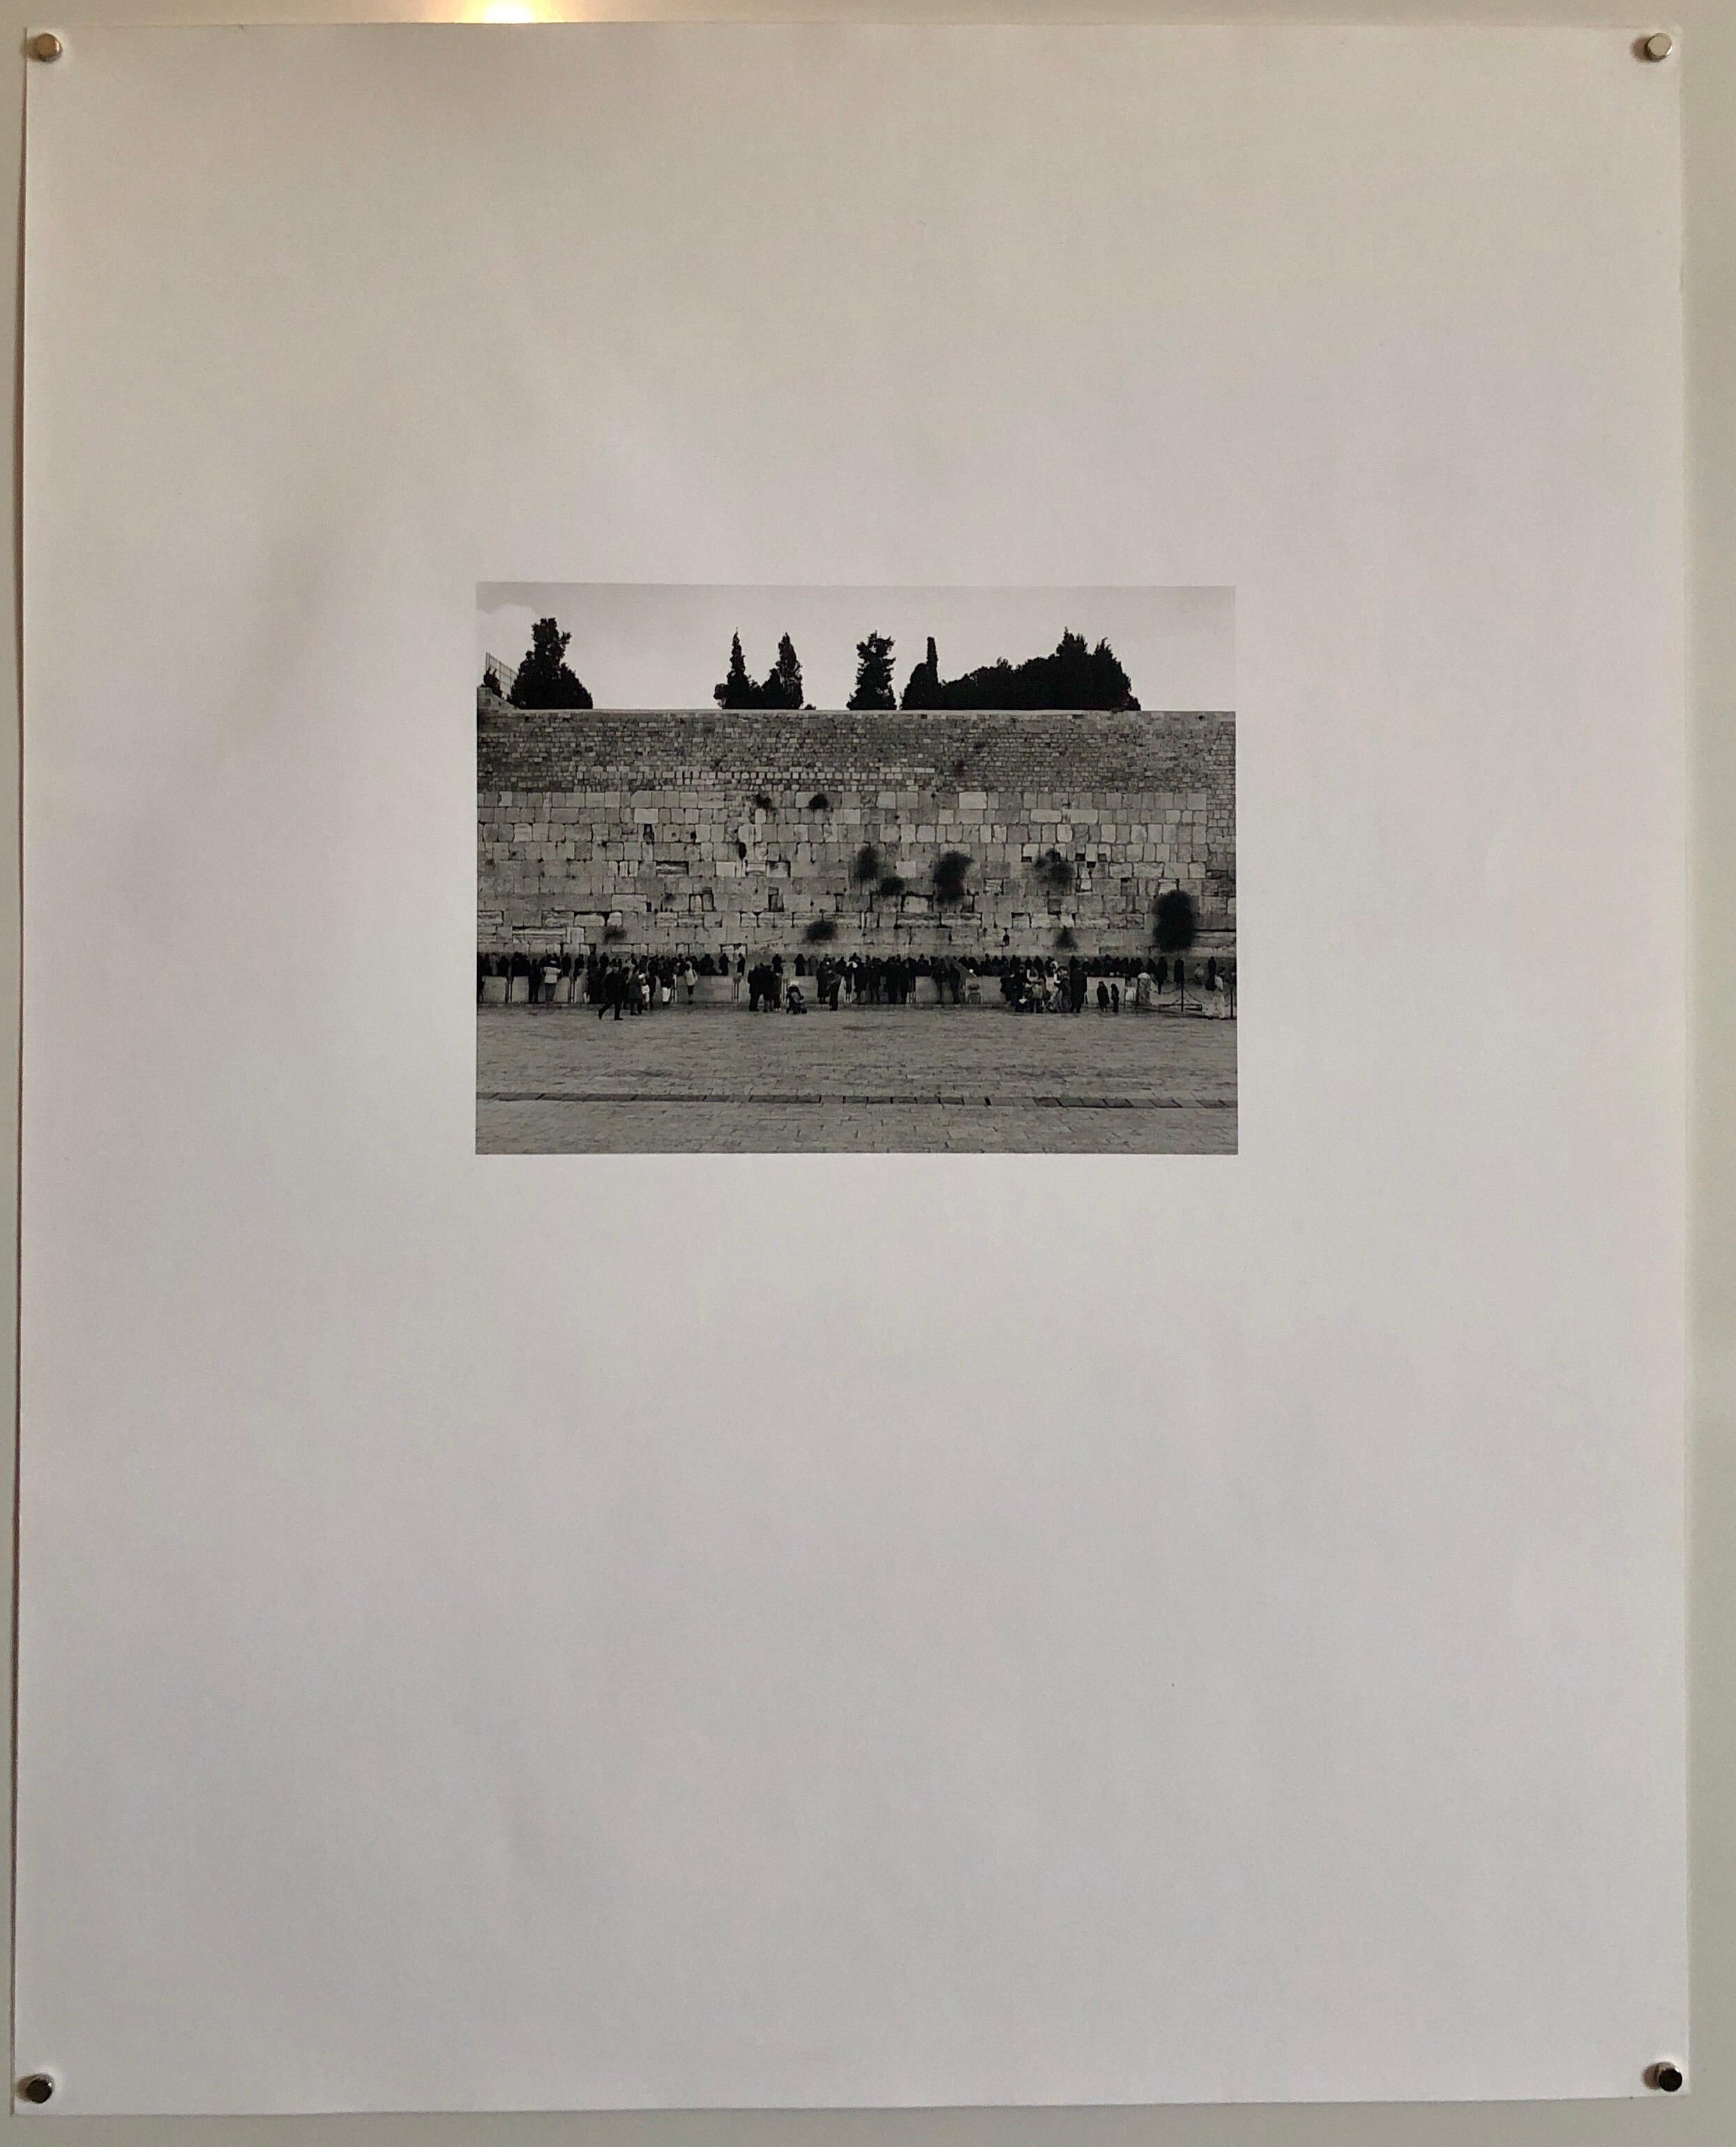 Schwarz-Weiß-Foto der Klagemauer (Kotel Hamaaravi) in Jerusalem, Israel. Handsigniert, datiert und betitelt. Aus einer sehr kleinen Auflage von nur 5 Drucken.

Mikael Levin wurde in New York City geboren und wuchs in Israel, den Vereinigten Staaten